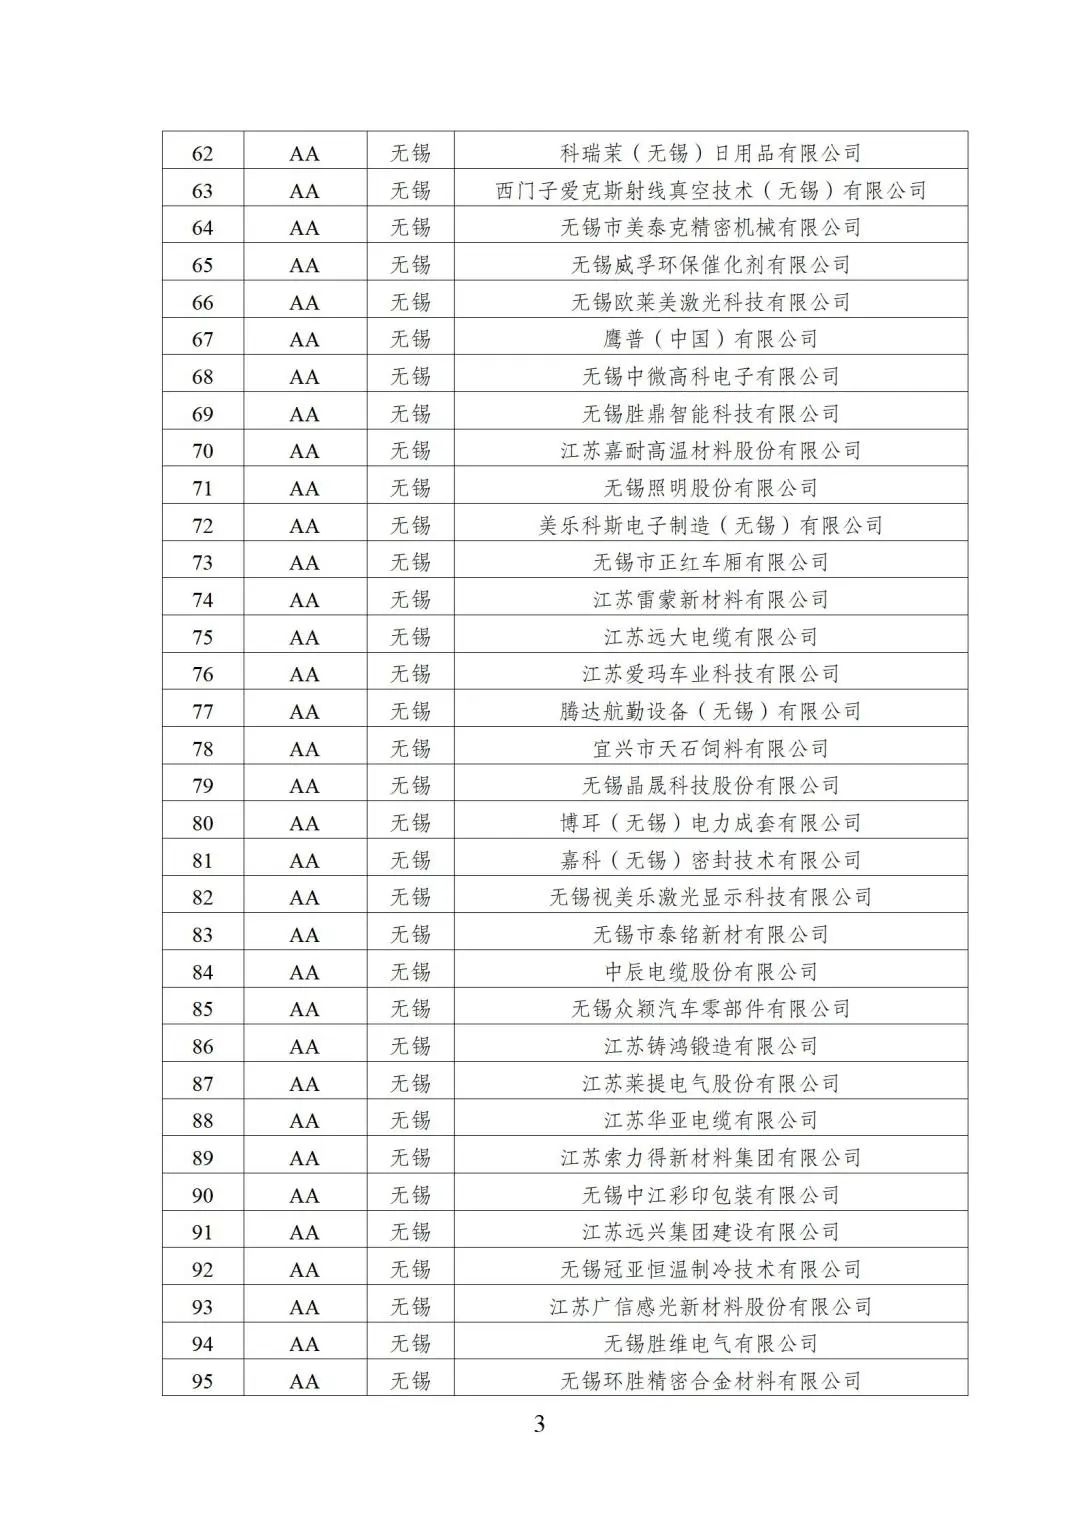 2022年江苏省两化融合管理体系贯标示范企业培育对象名单3.jpg